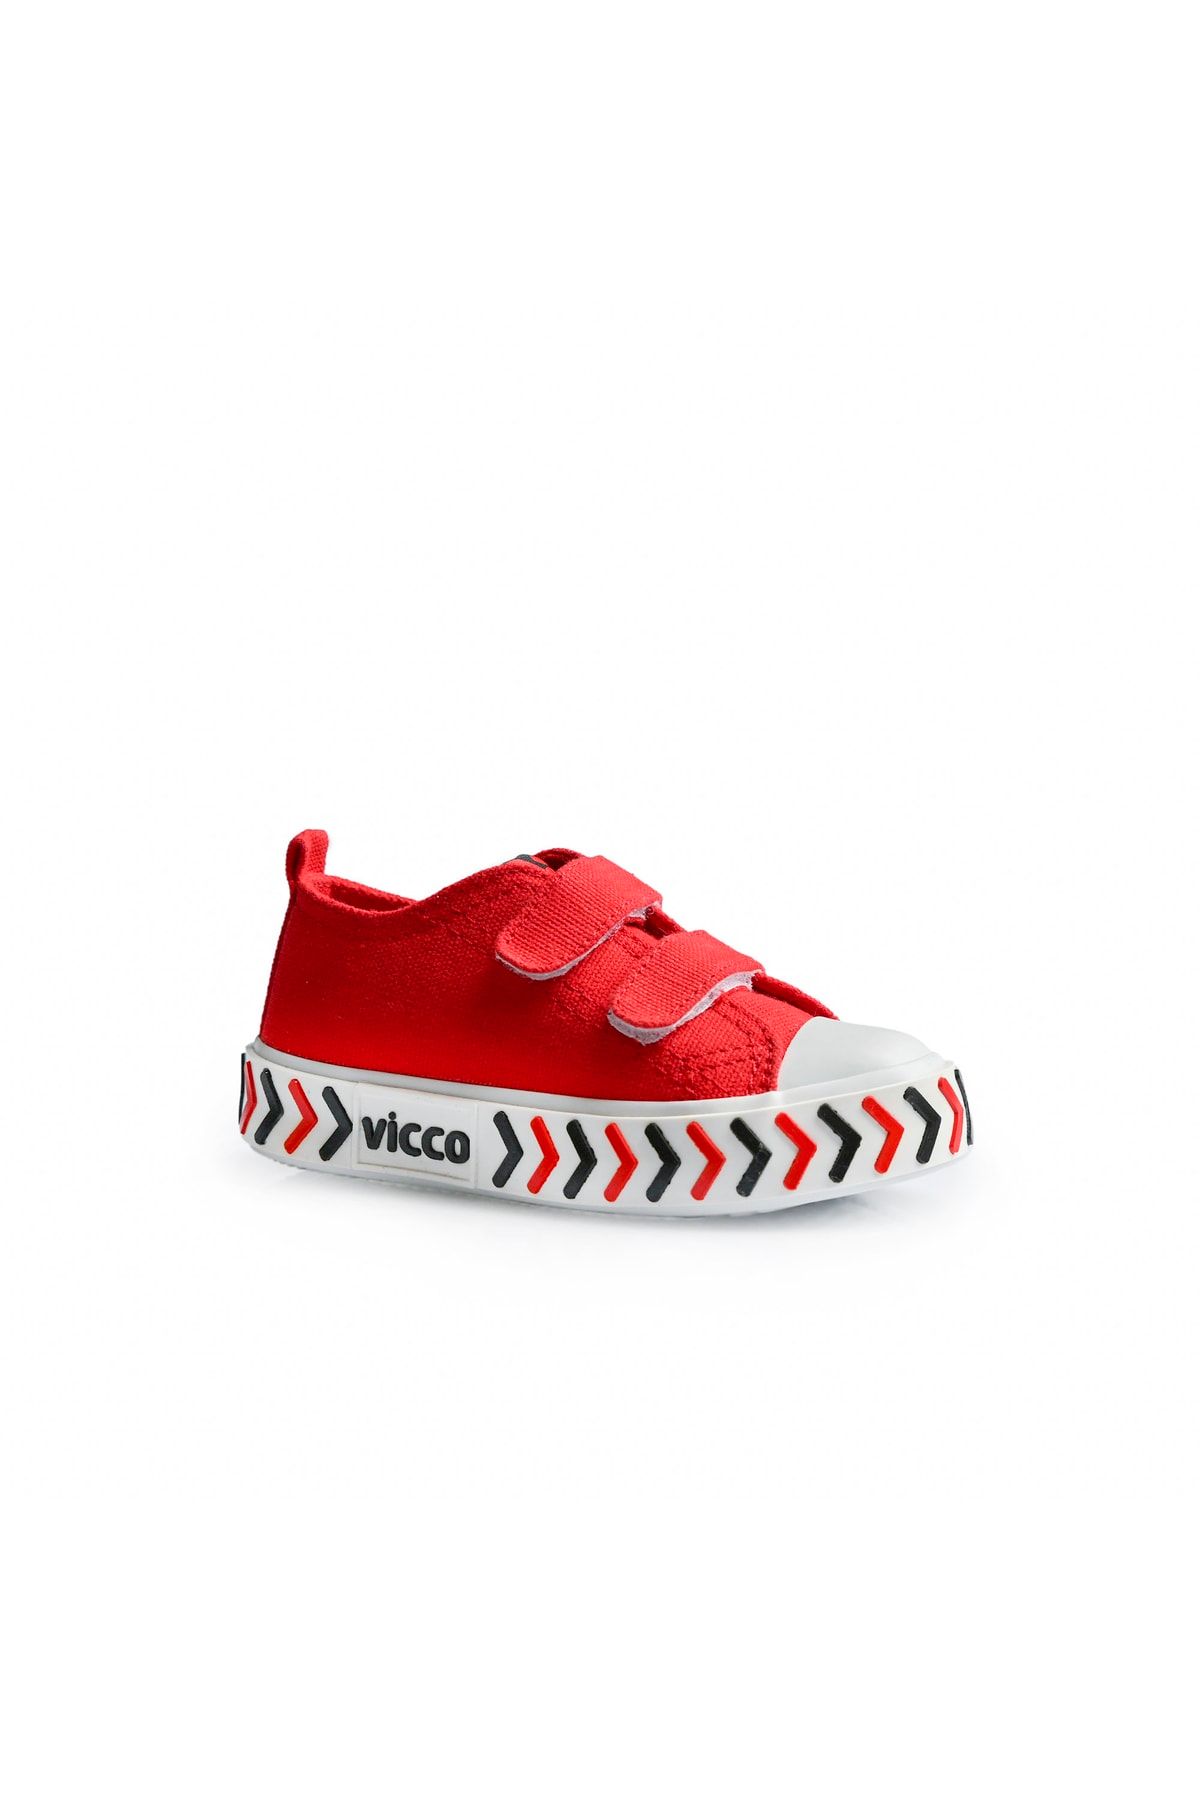 Vicco Timo Basic Unisex Bebe Kırmızı Spor Ayakkabı